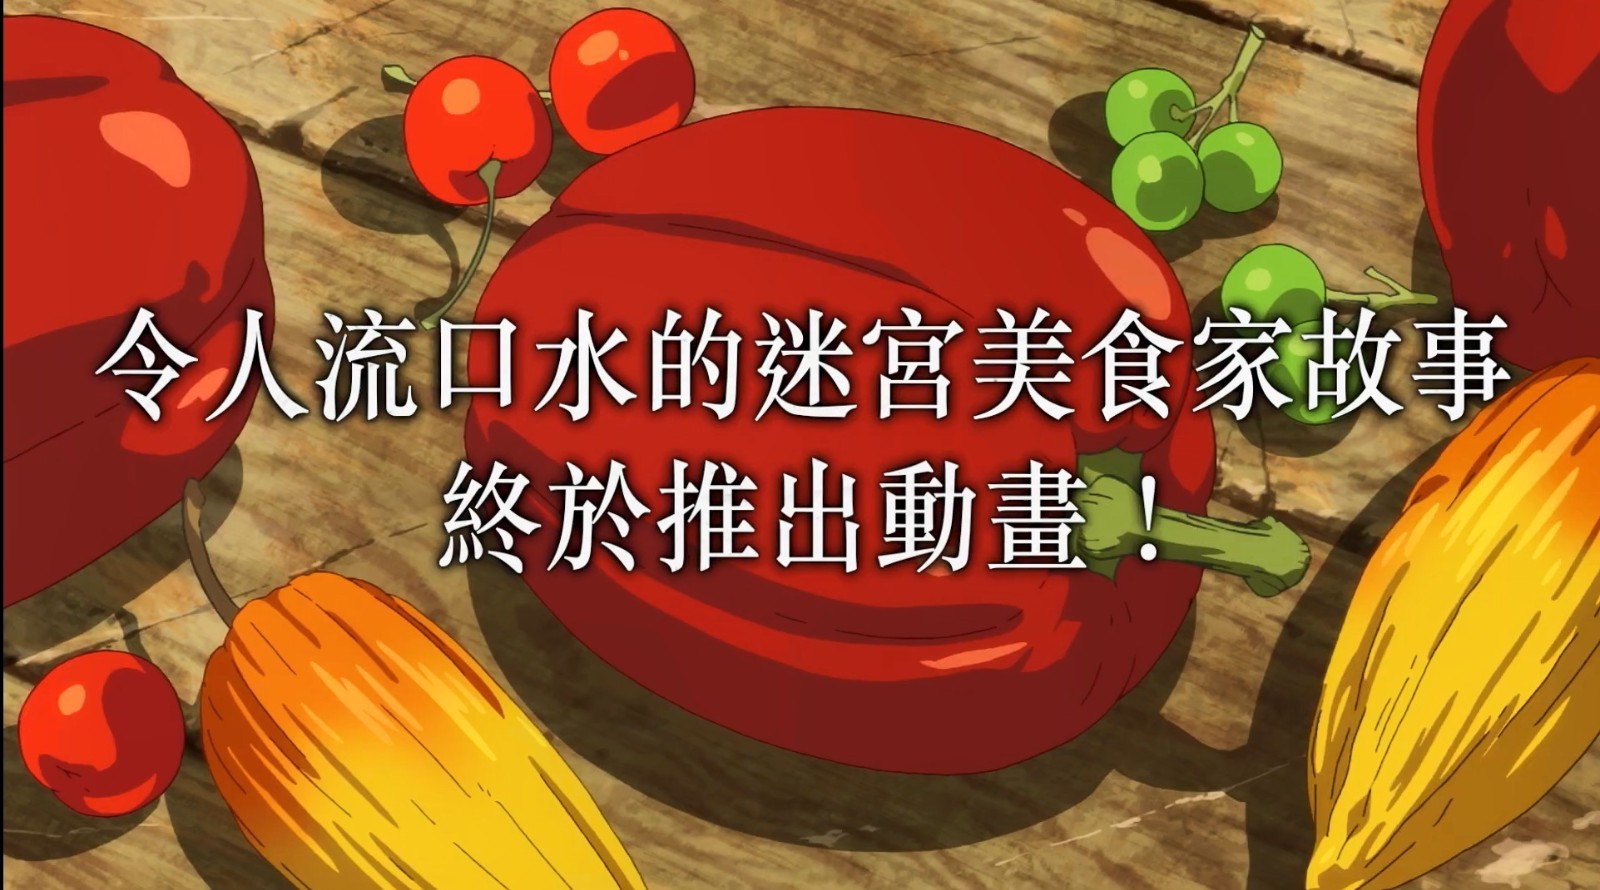 【影视动漫】扳机社TV动画《迷宫饭》中文先导预告-第1张